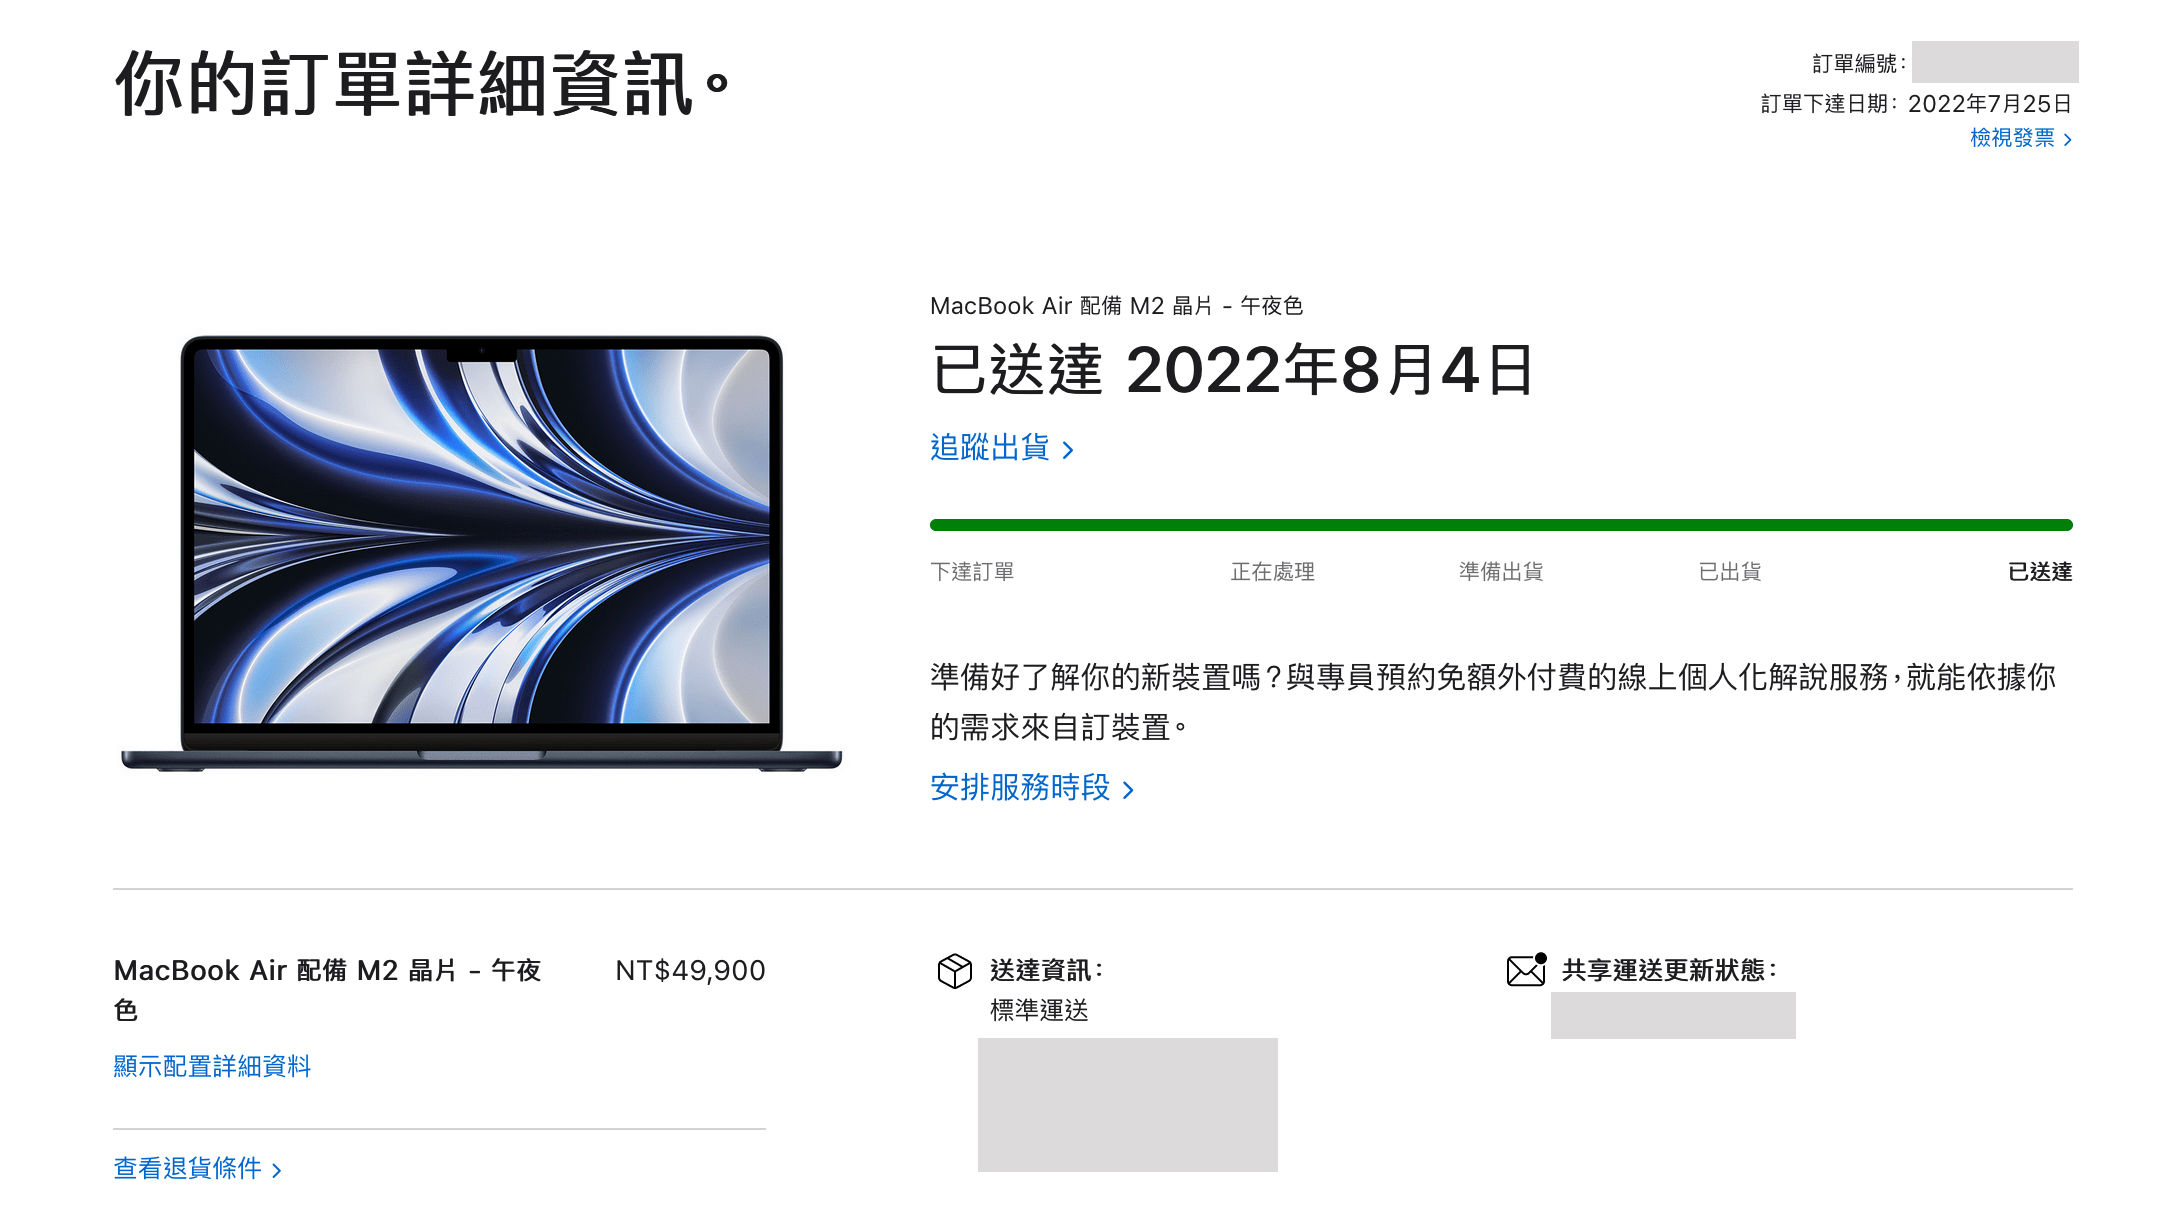 MacBook Air M2 Order